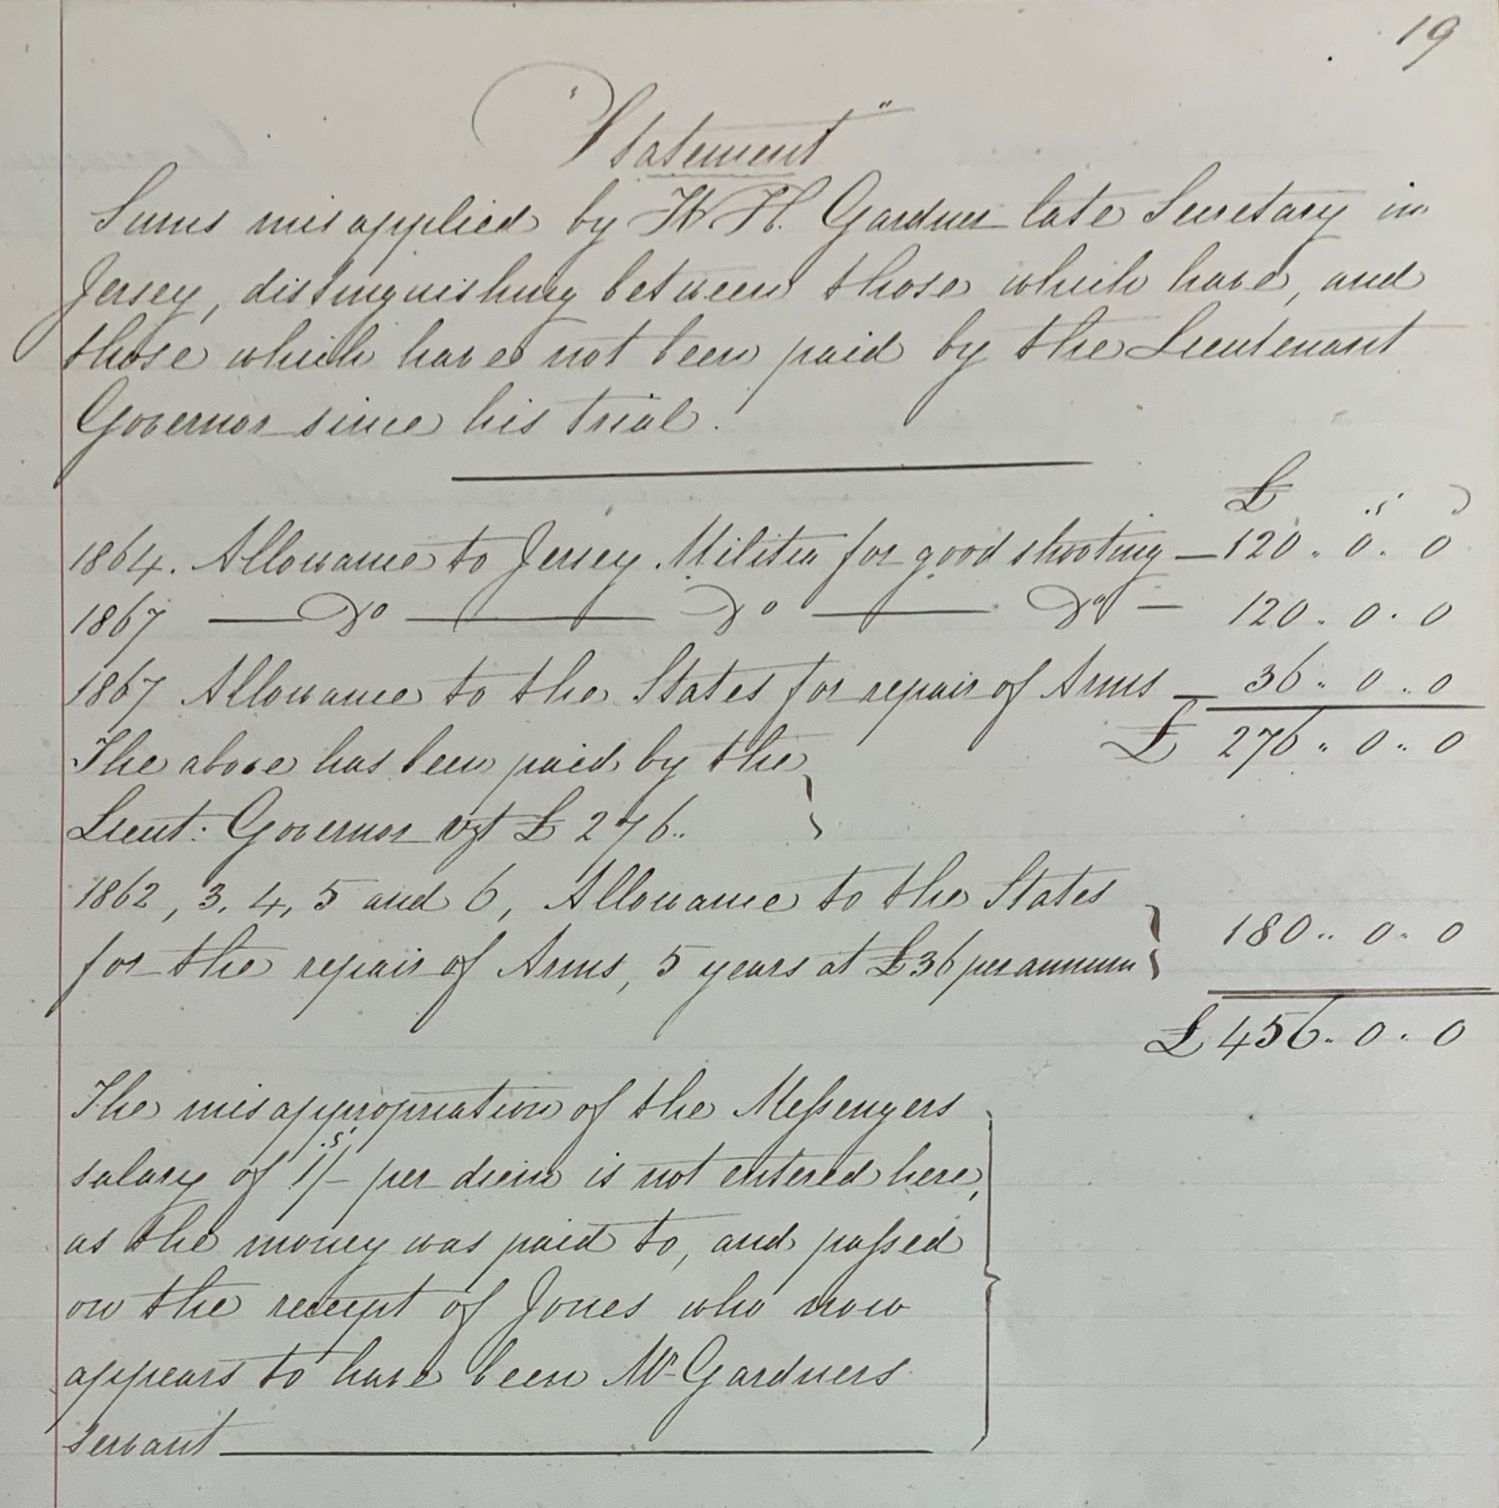 Statement_detailing_amounts_of_money_stolen_by_W_H_Gardner_1868_Jersey_Heritage.jpg